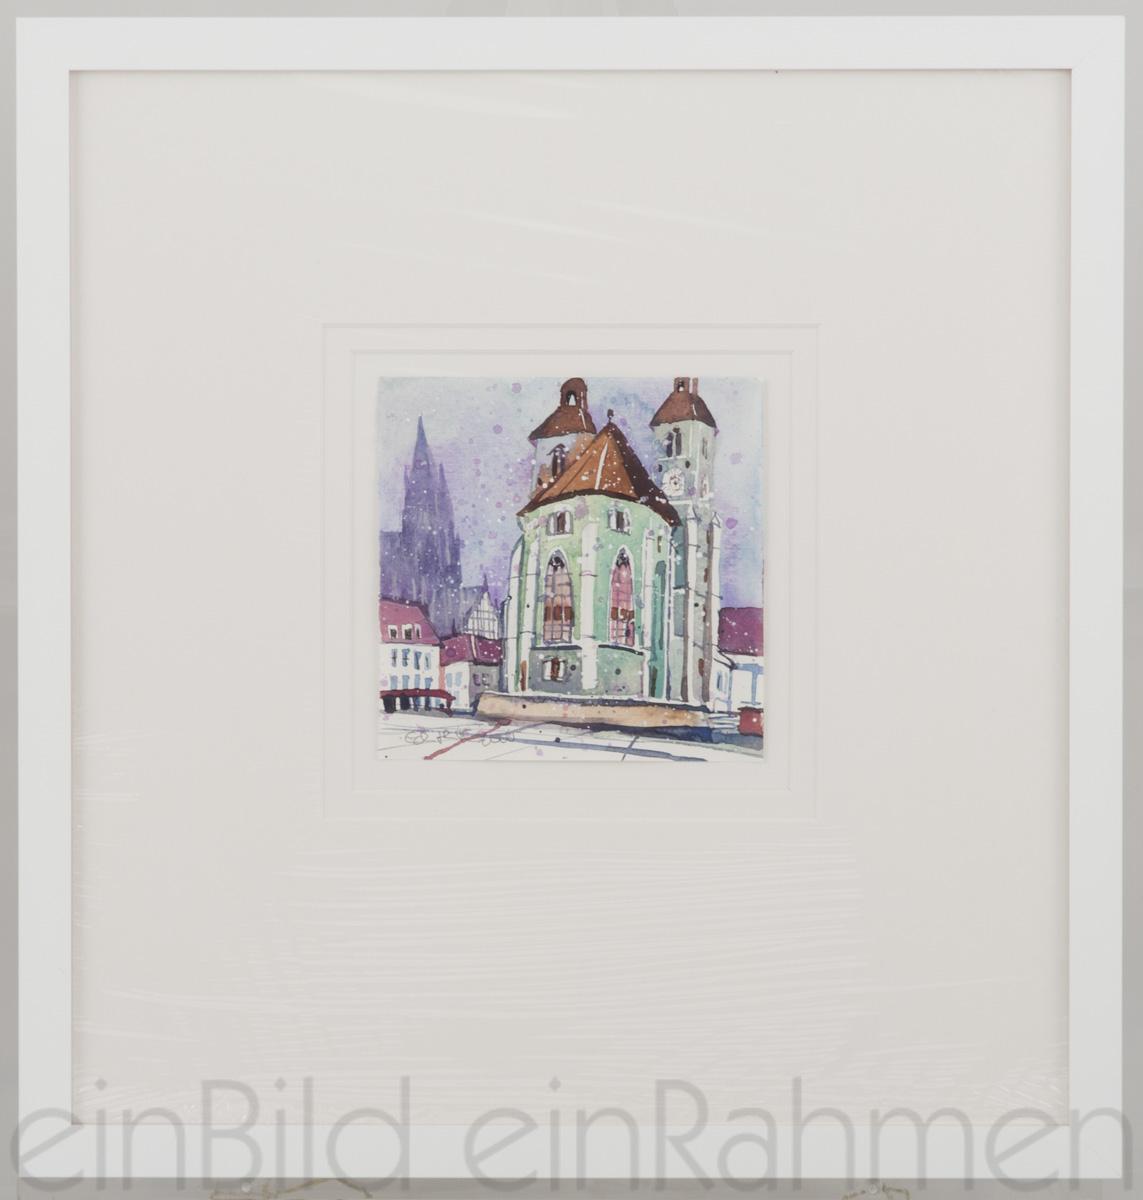 Neupfarrkirche, Regensburg Edith Thurnherr Aqurell Kleines Format von der Gallerie EinBild EinRahmen